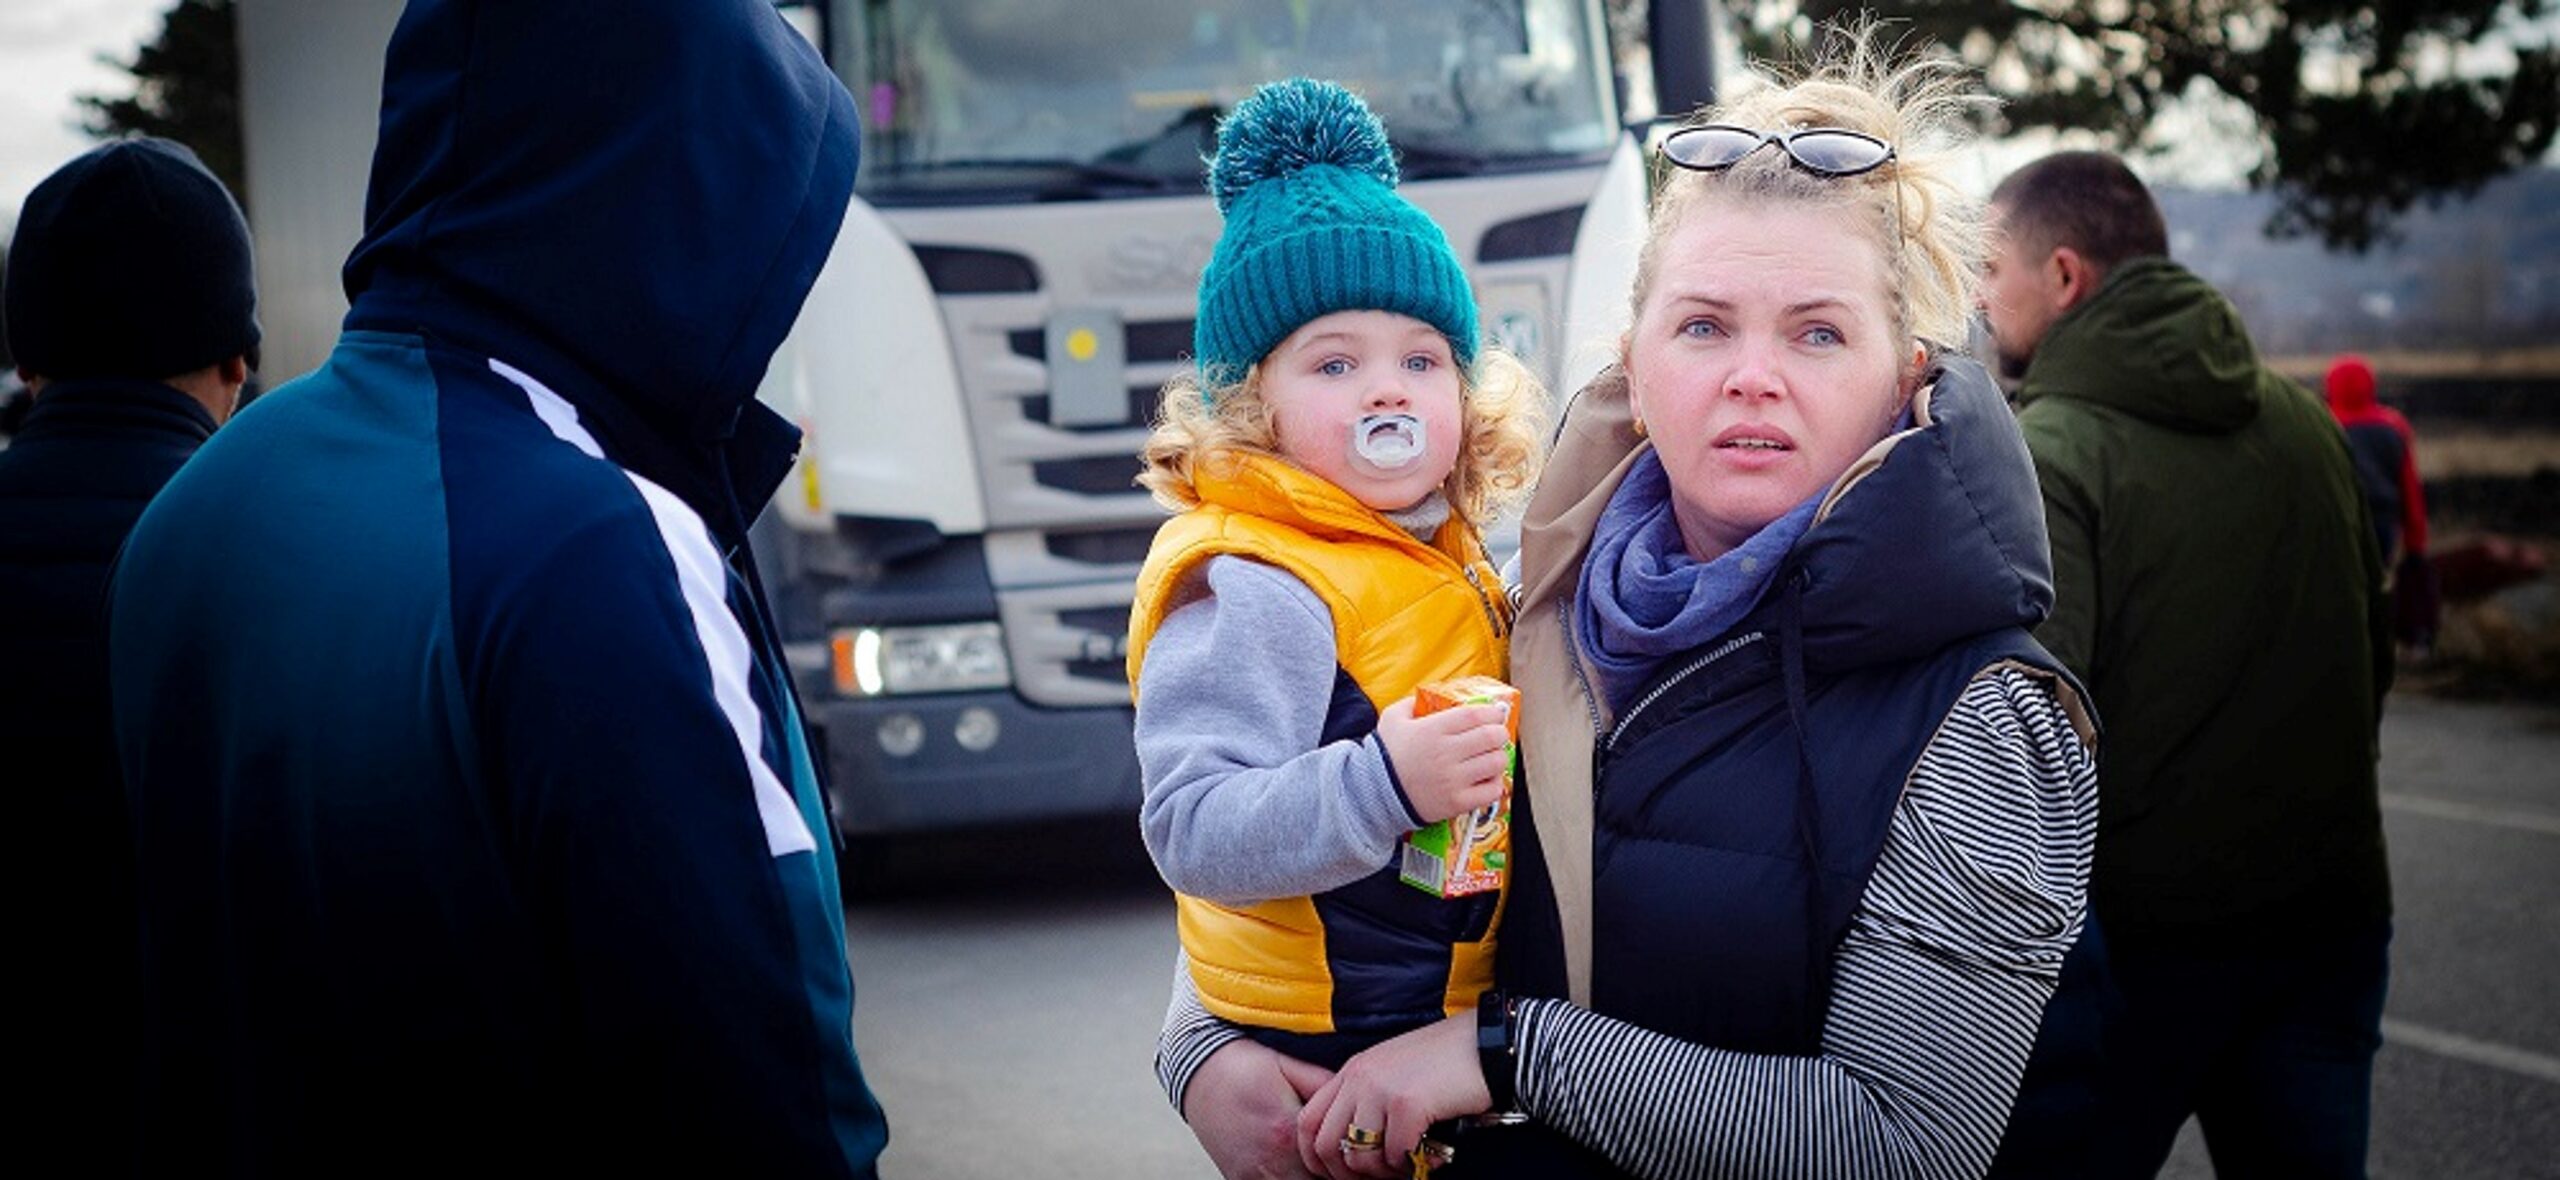 Ukrainische Mutter mit Kind auf dem Arm